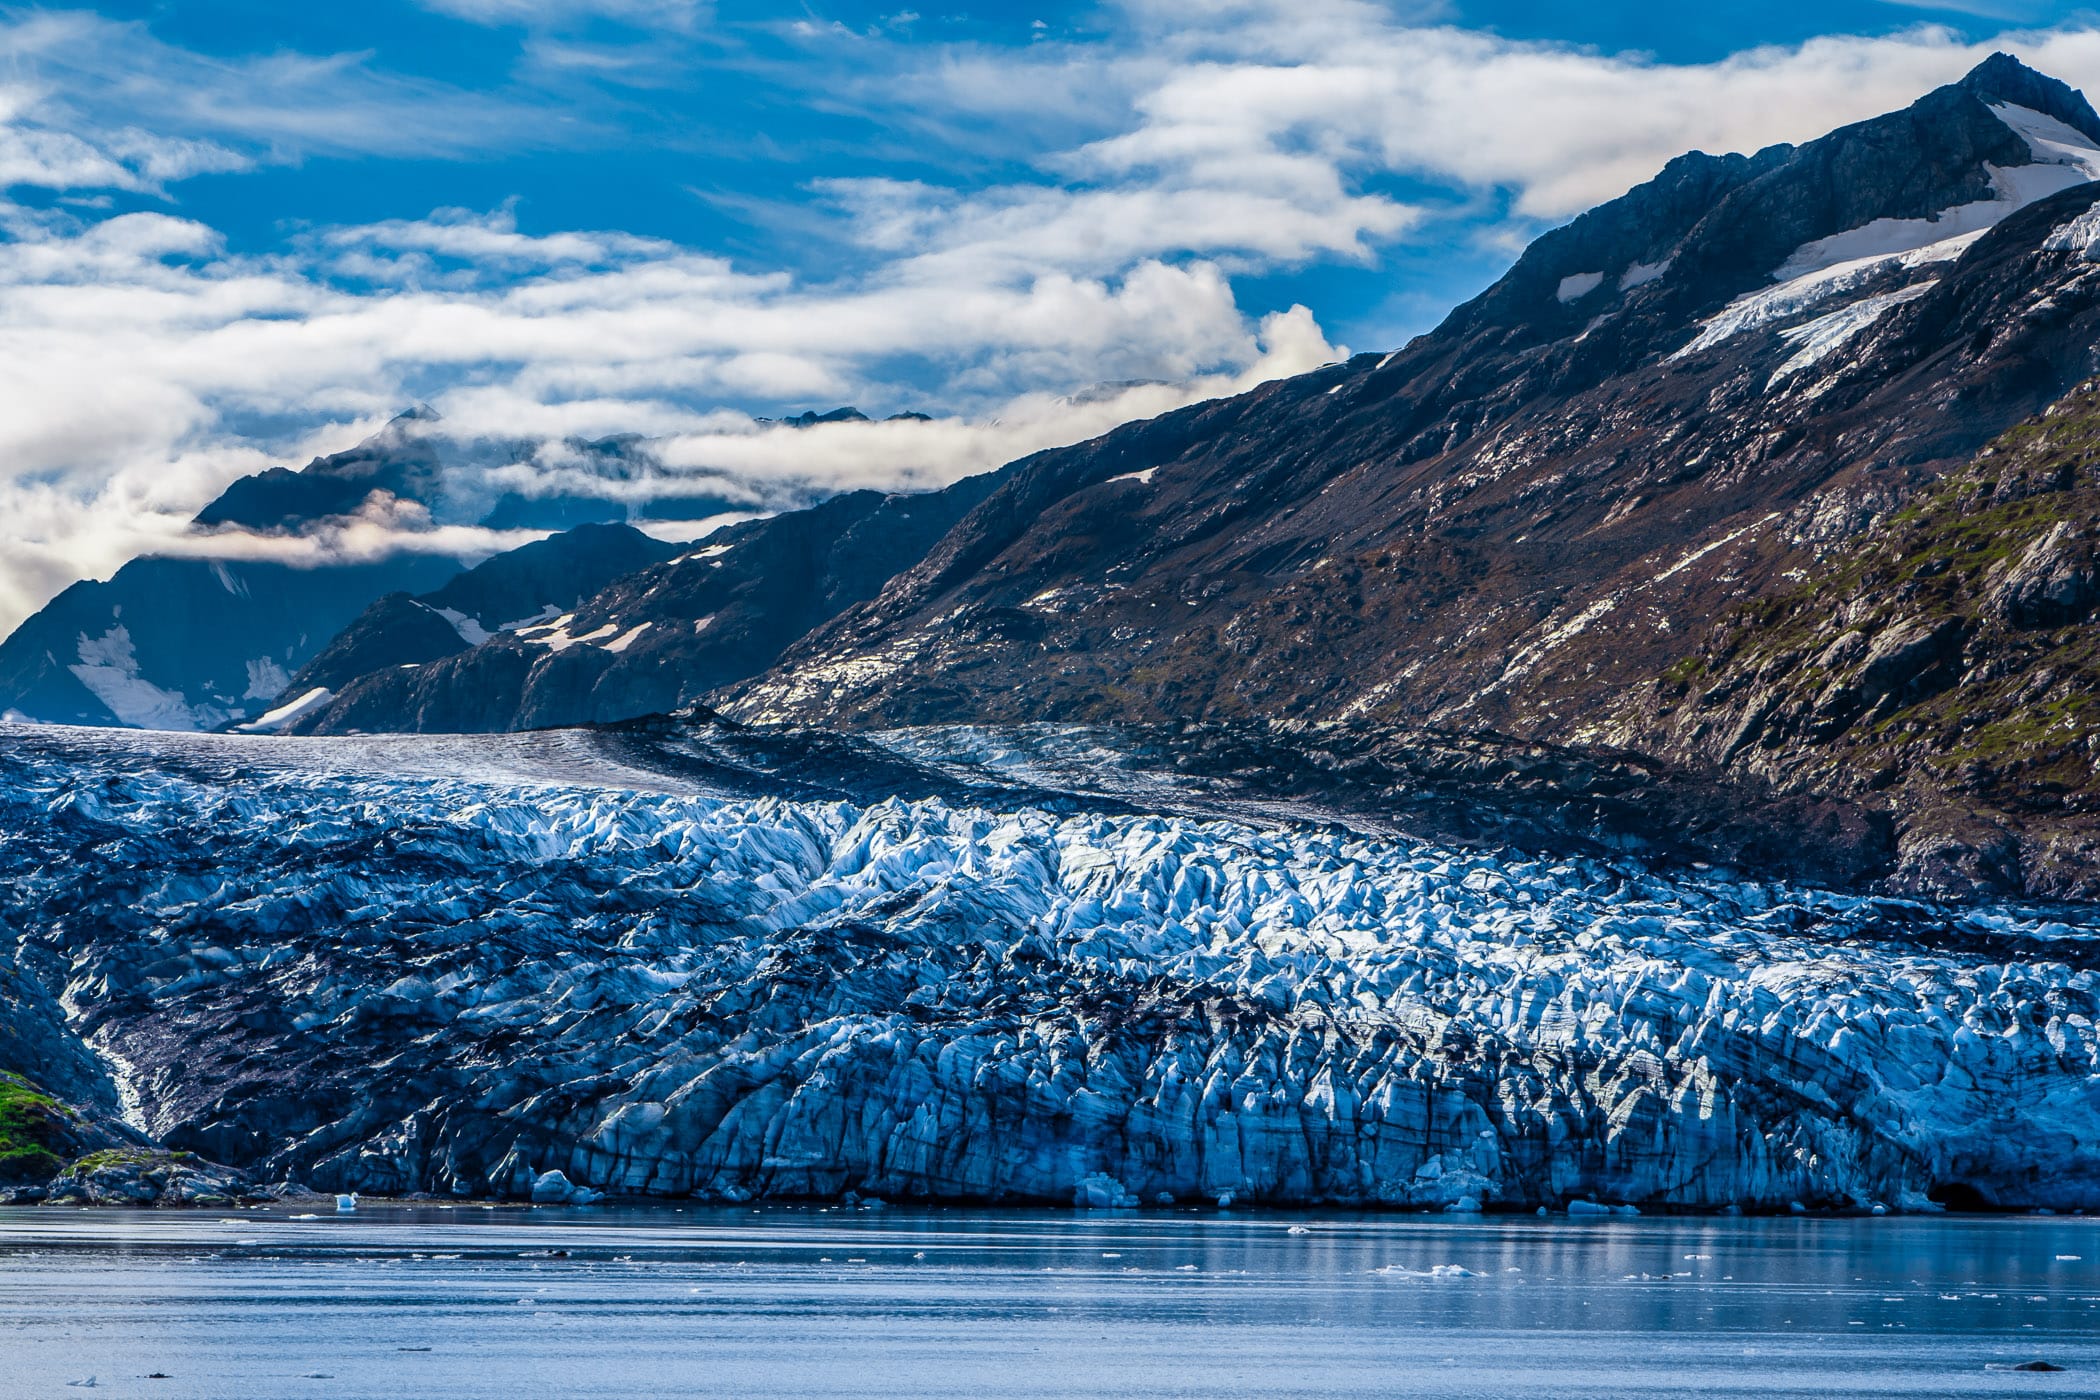 The blue ice of Lamplugh Glacier hugs the coastline of Alaska's Glacier Bay.